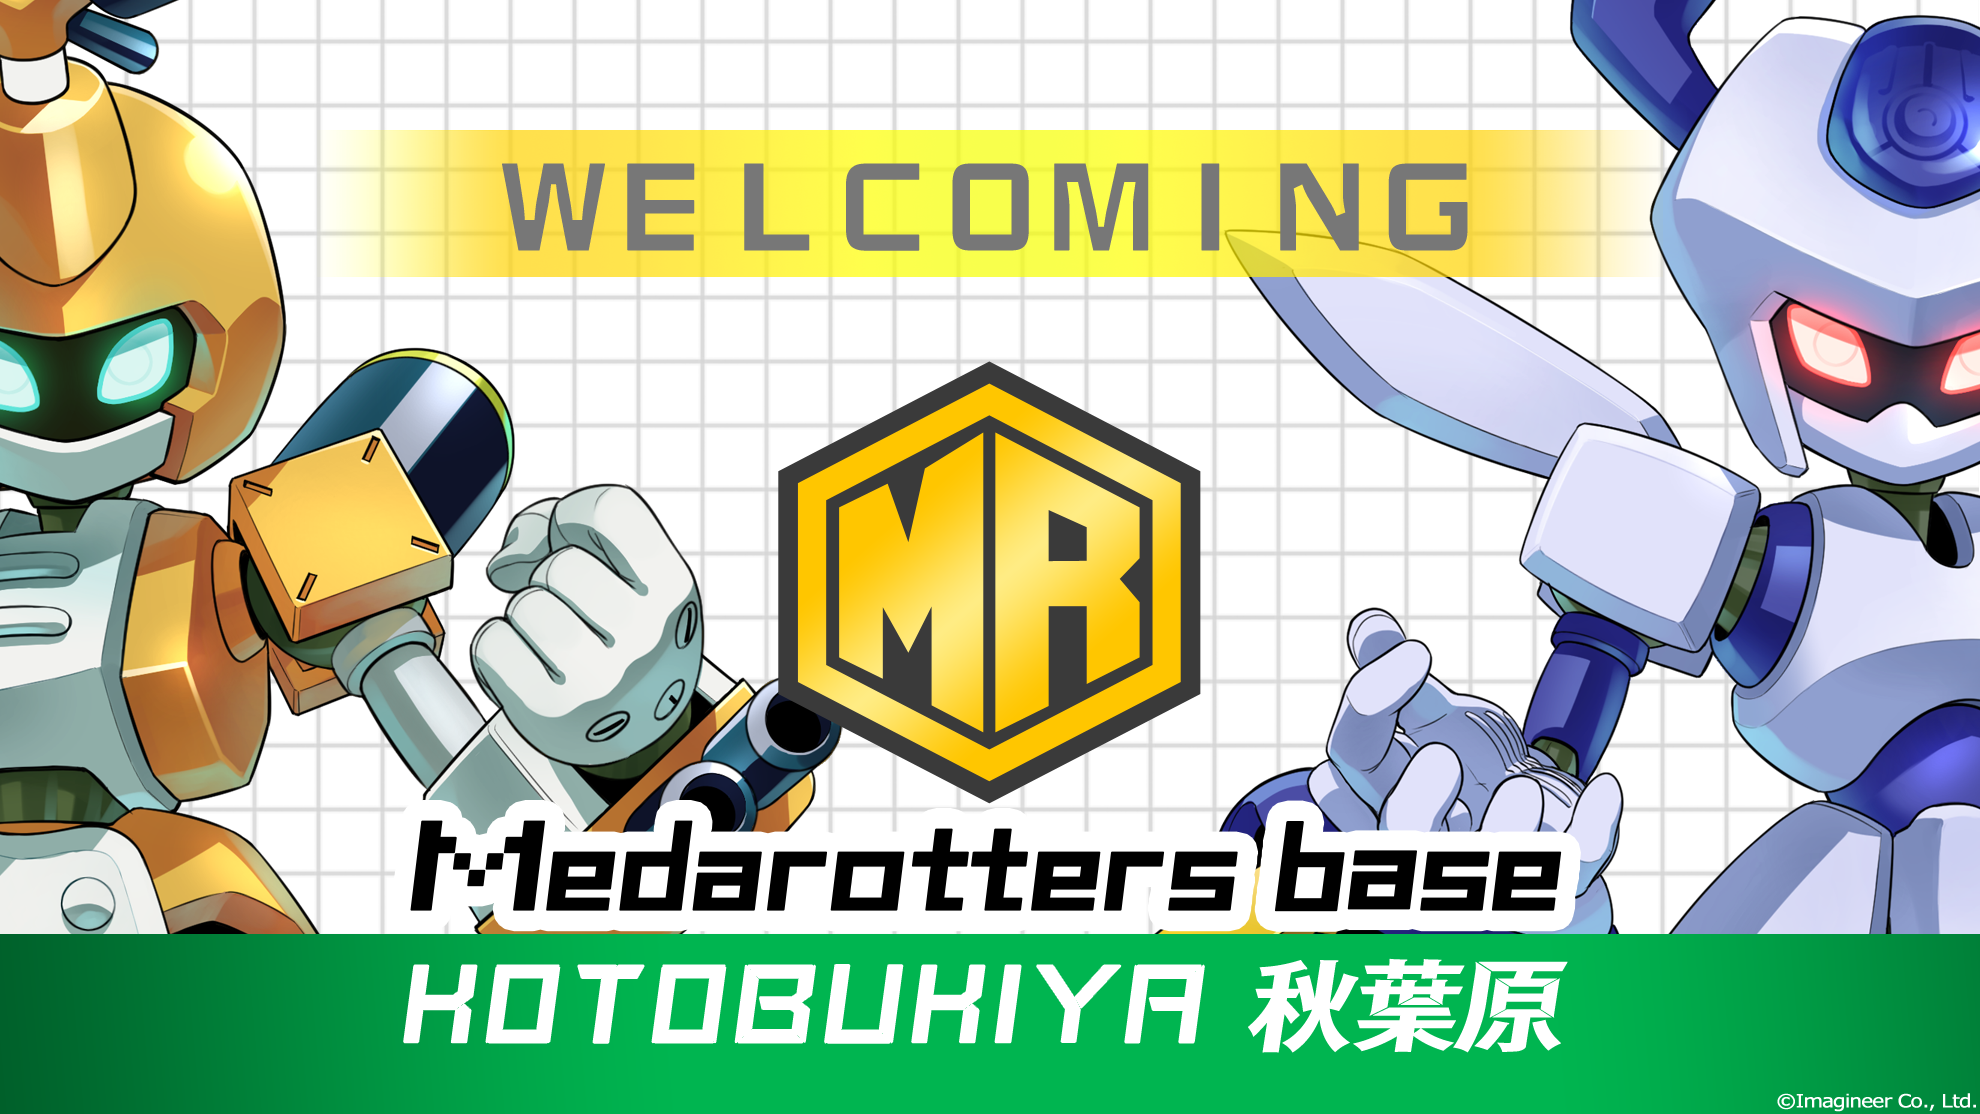 メダロット☆Medarotters base コトブキヤ秋葉原